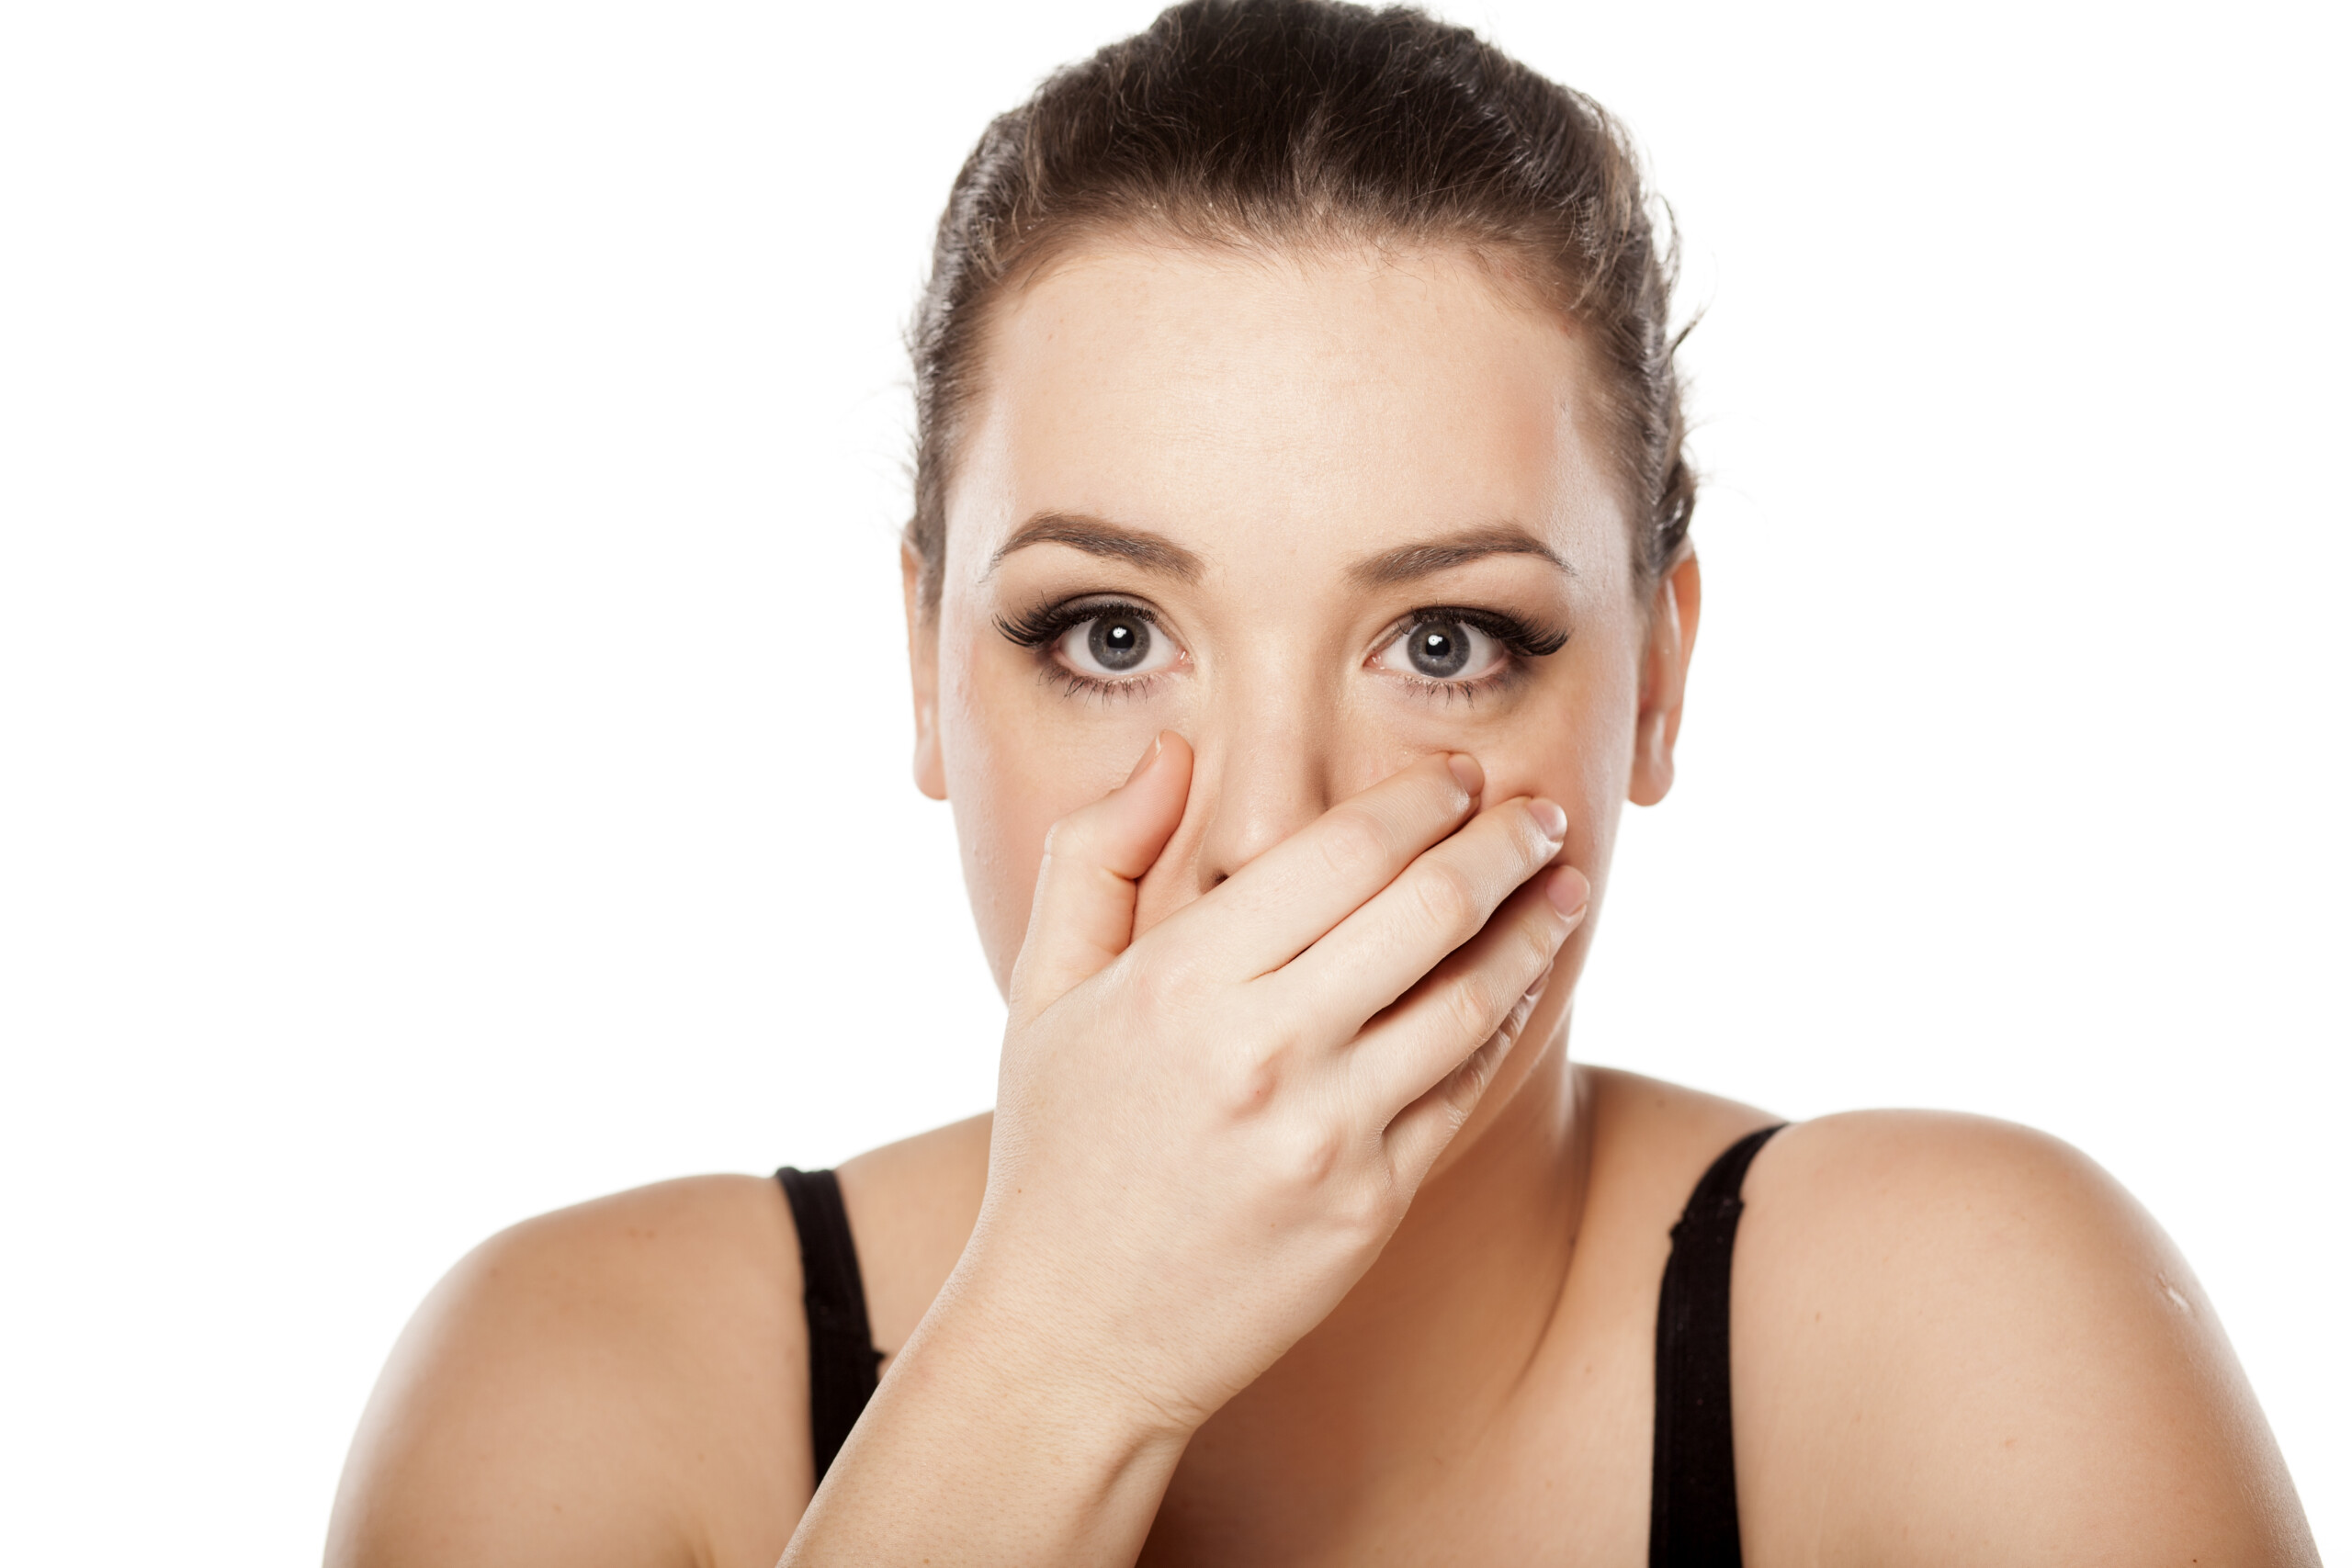 Is Burping a Symptom of IBS?